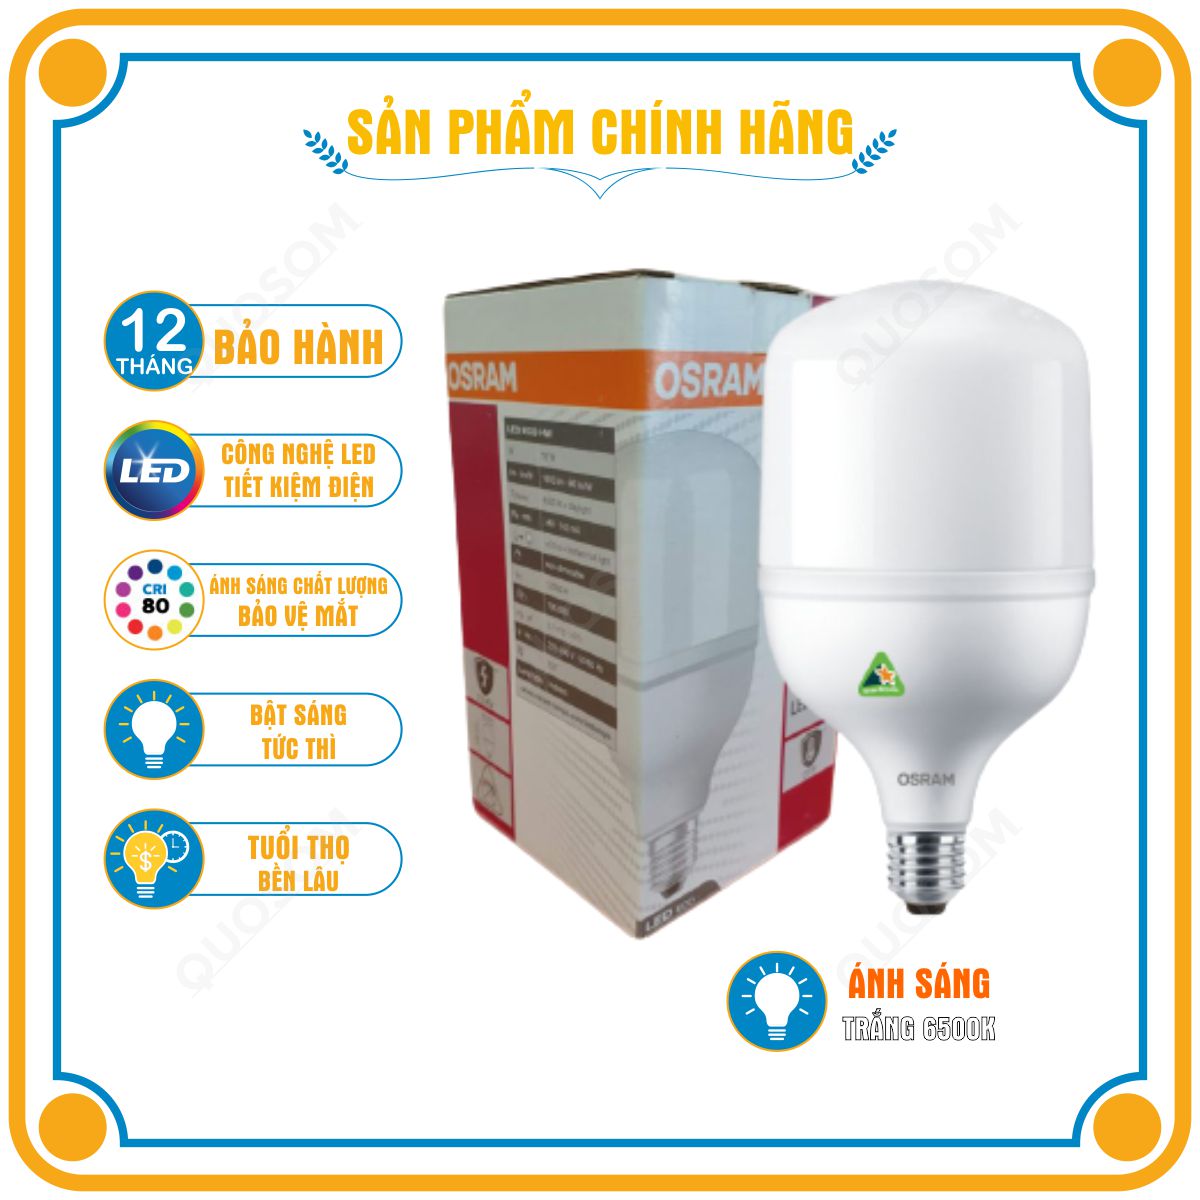 Bóng đèn LED trụ T-Bulb OSRAM E27 - Tiết kiệm điện, độ sáng cao, chất lượng ánh sáng vượt trội, bảo vệ quá nhiệt, chống xung 2.5Kv - Hàng Chính Hãng